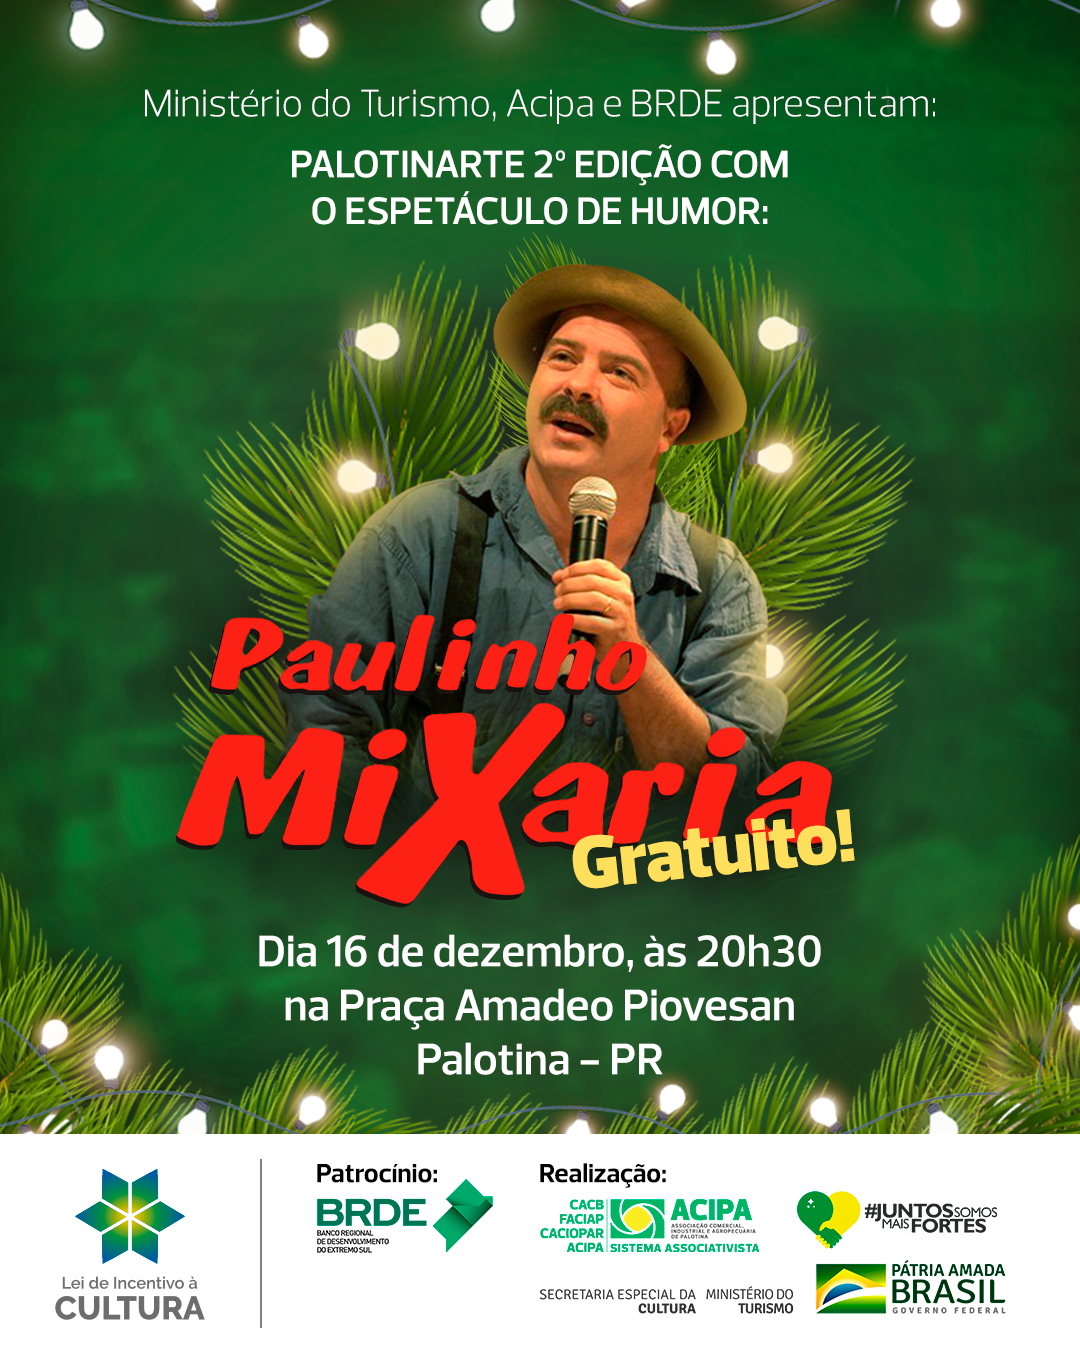 Acipa vai promover show com Paulinho Mixaria      